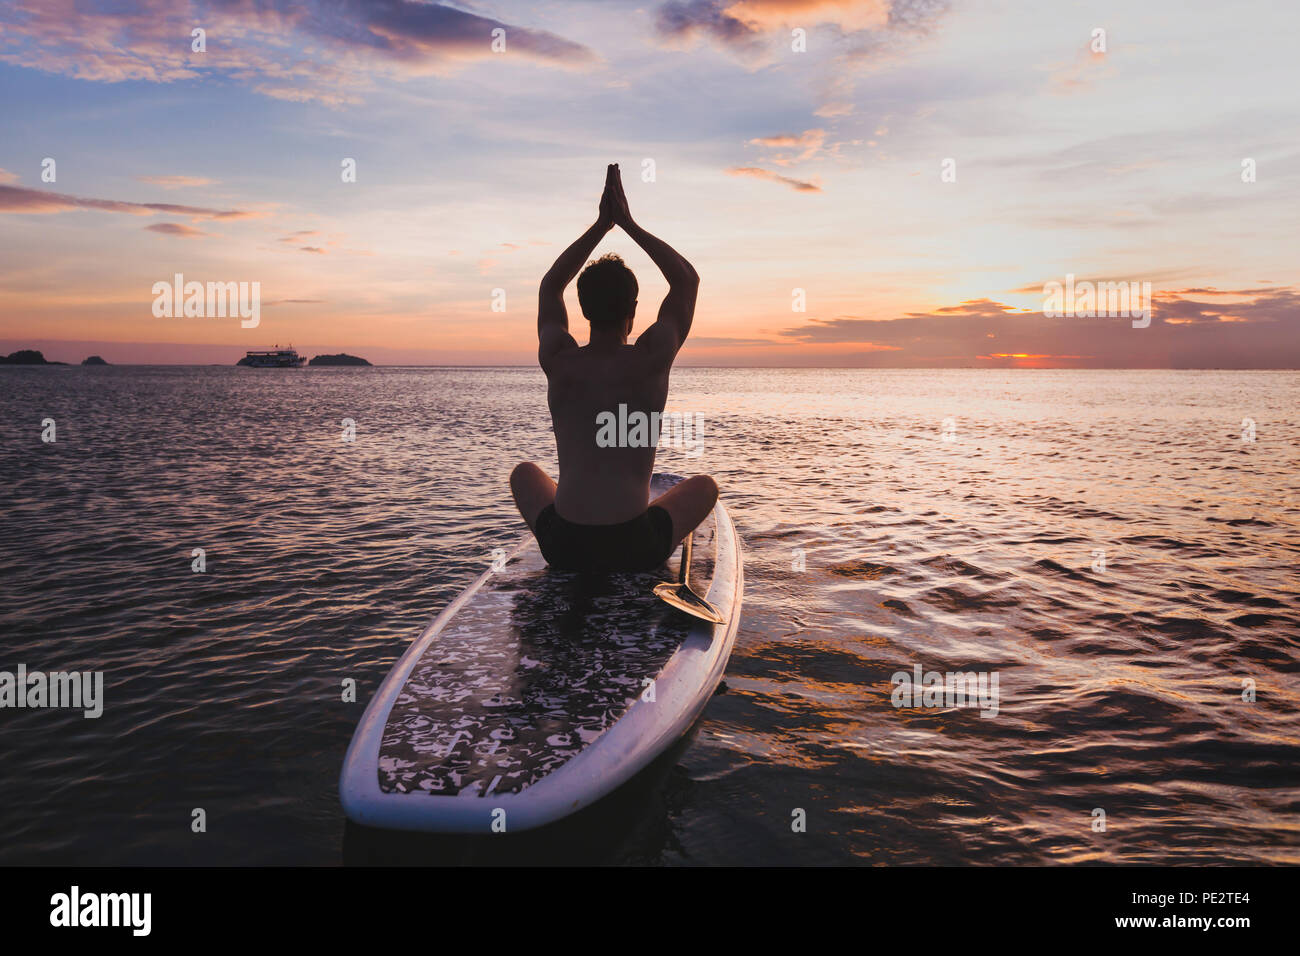 Yoga en SUP, la silueta del hombre sentado en la postura del loto en el stand up paddle board Foto de stock